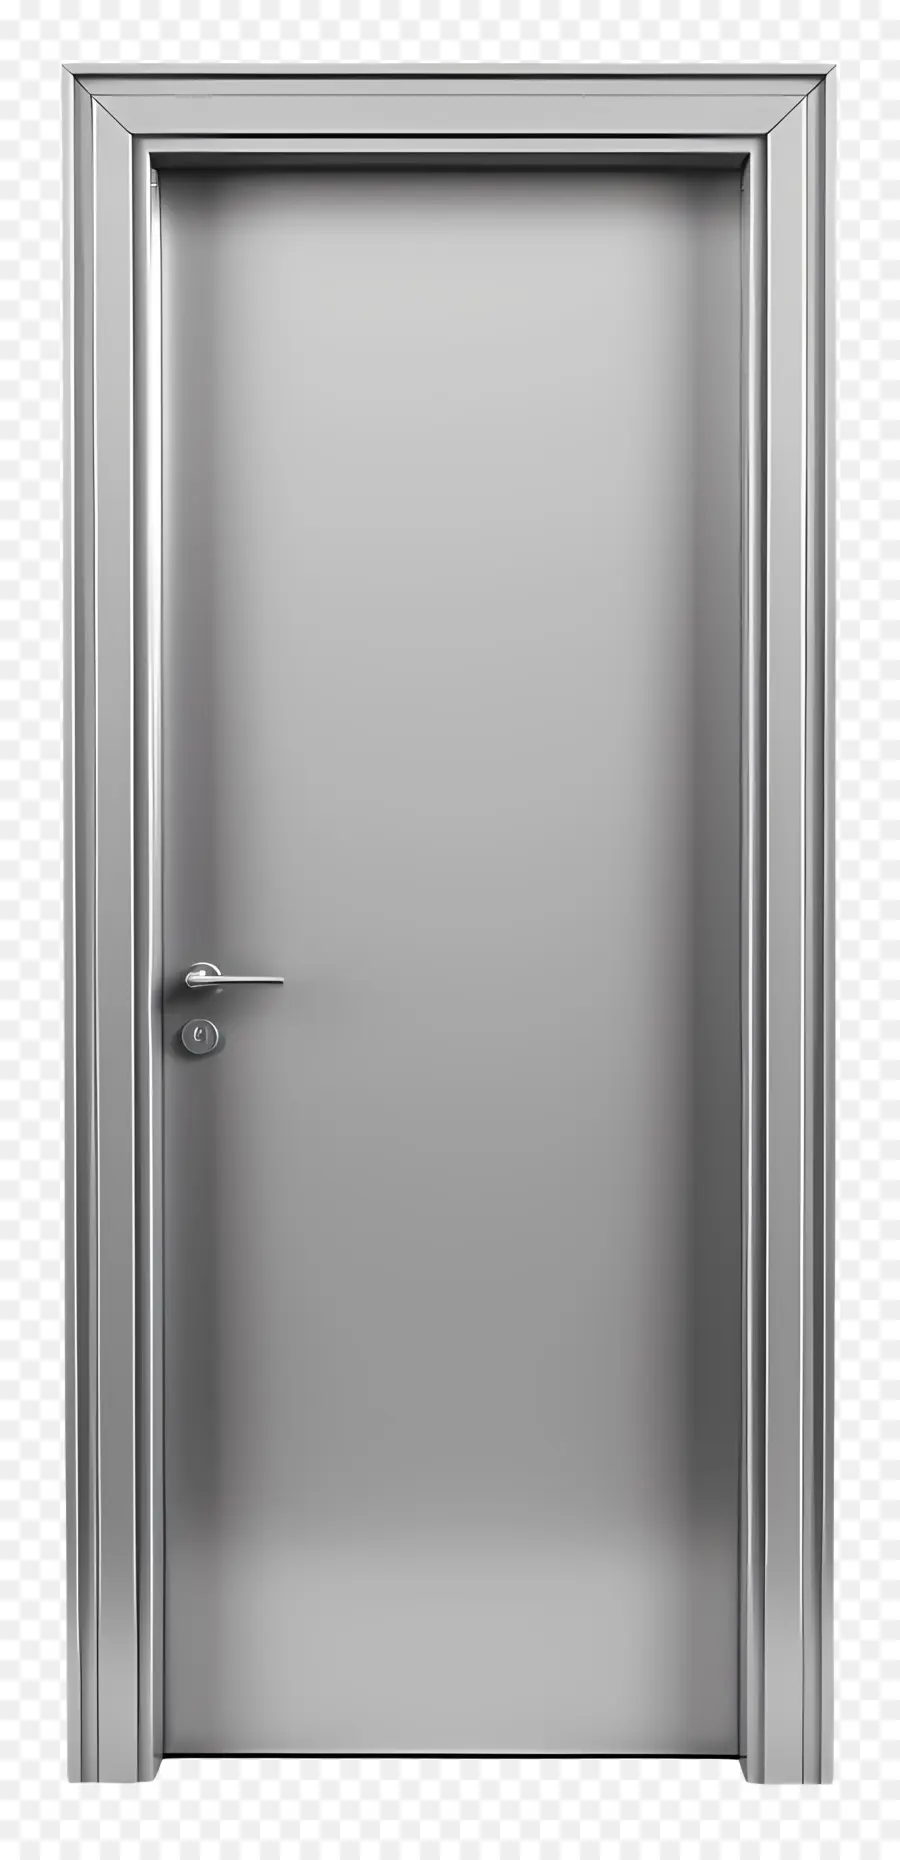 Metall -Türrahmen Stahl Tür Mattes Finish Symmetrisches Design Scharniere - Symmetrische Stahltür auf schwarzem Hintergrund